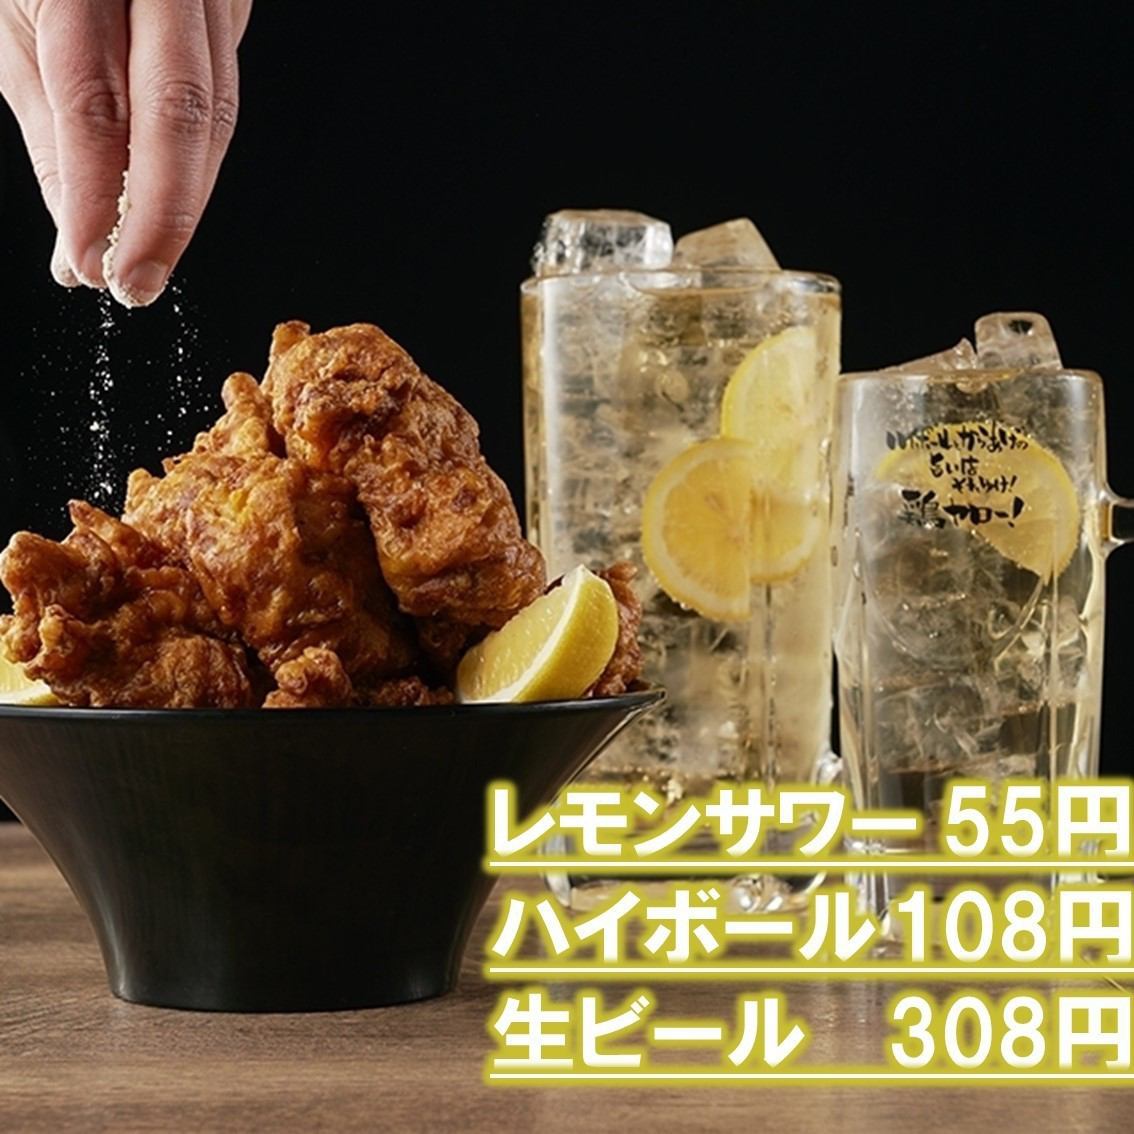 檸檬酸55日圓！無限暢飲1318日圓起，性價比最高♪